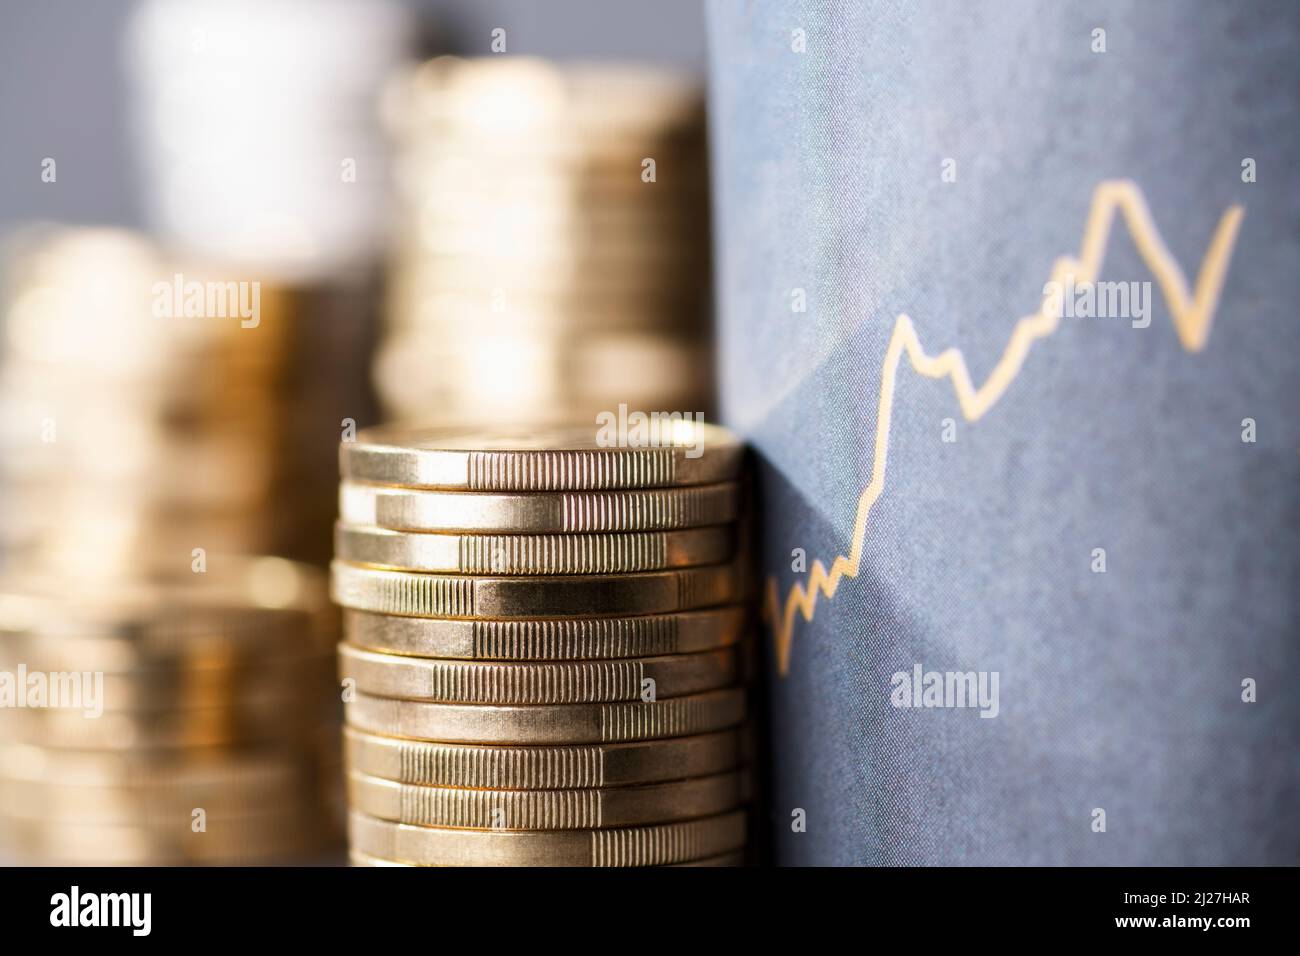 Stapel von Münzen neben einer Aufwärtskurve, die steigende Kosten aufgrund der Inflation symbolisiert Stockfoto